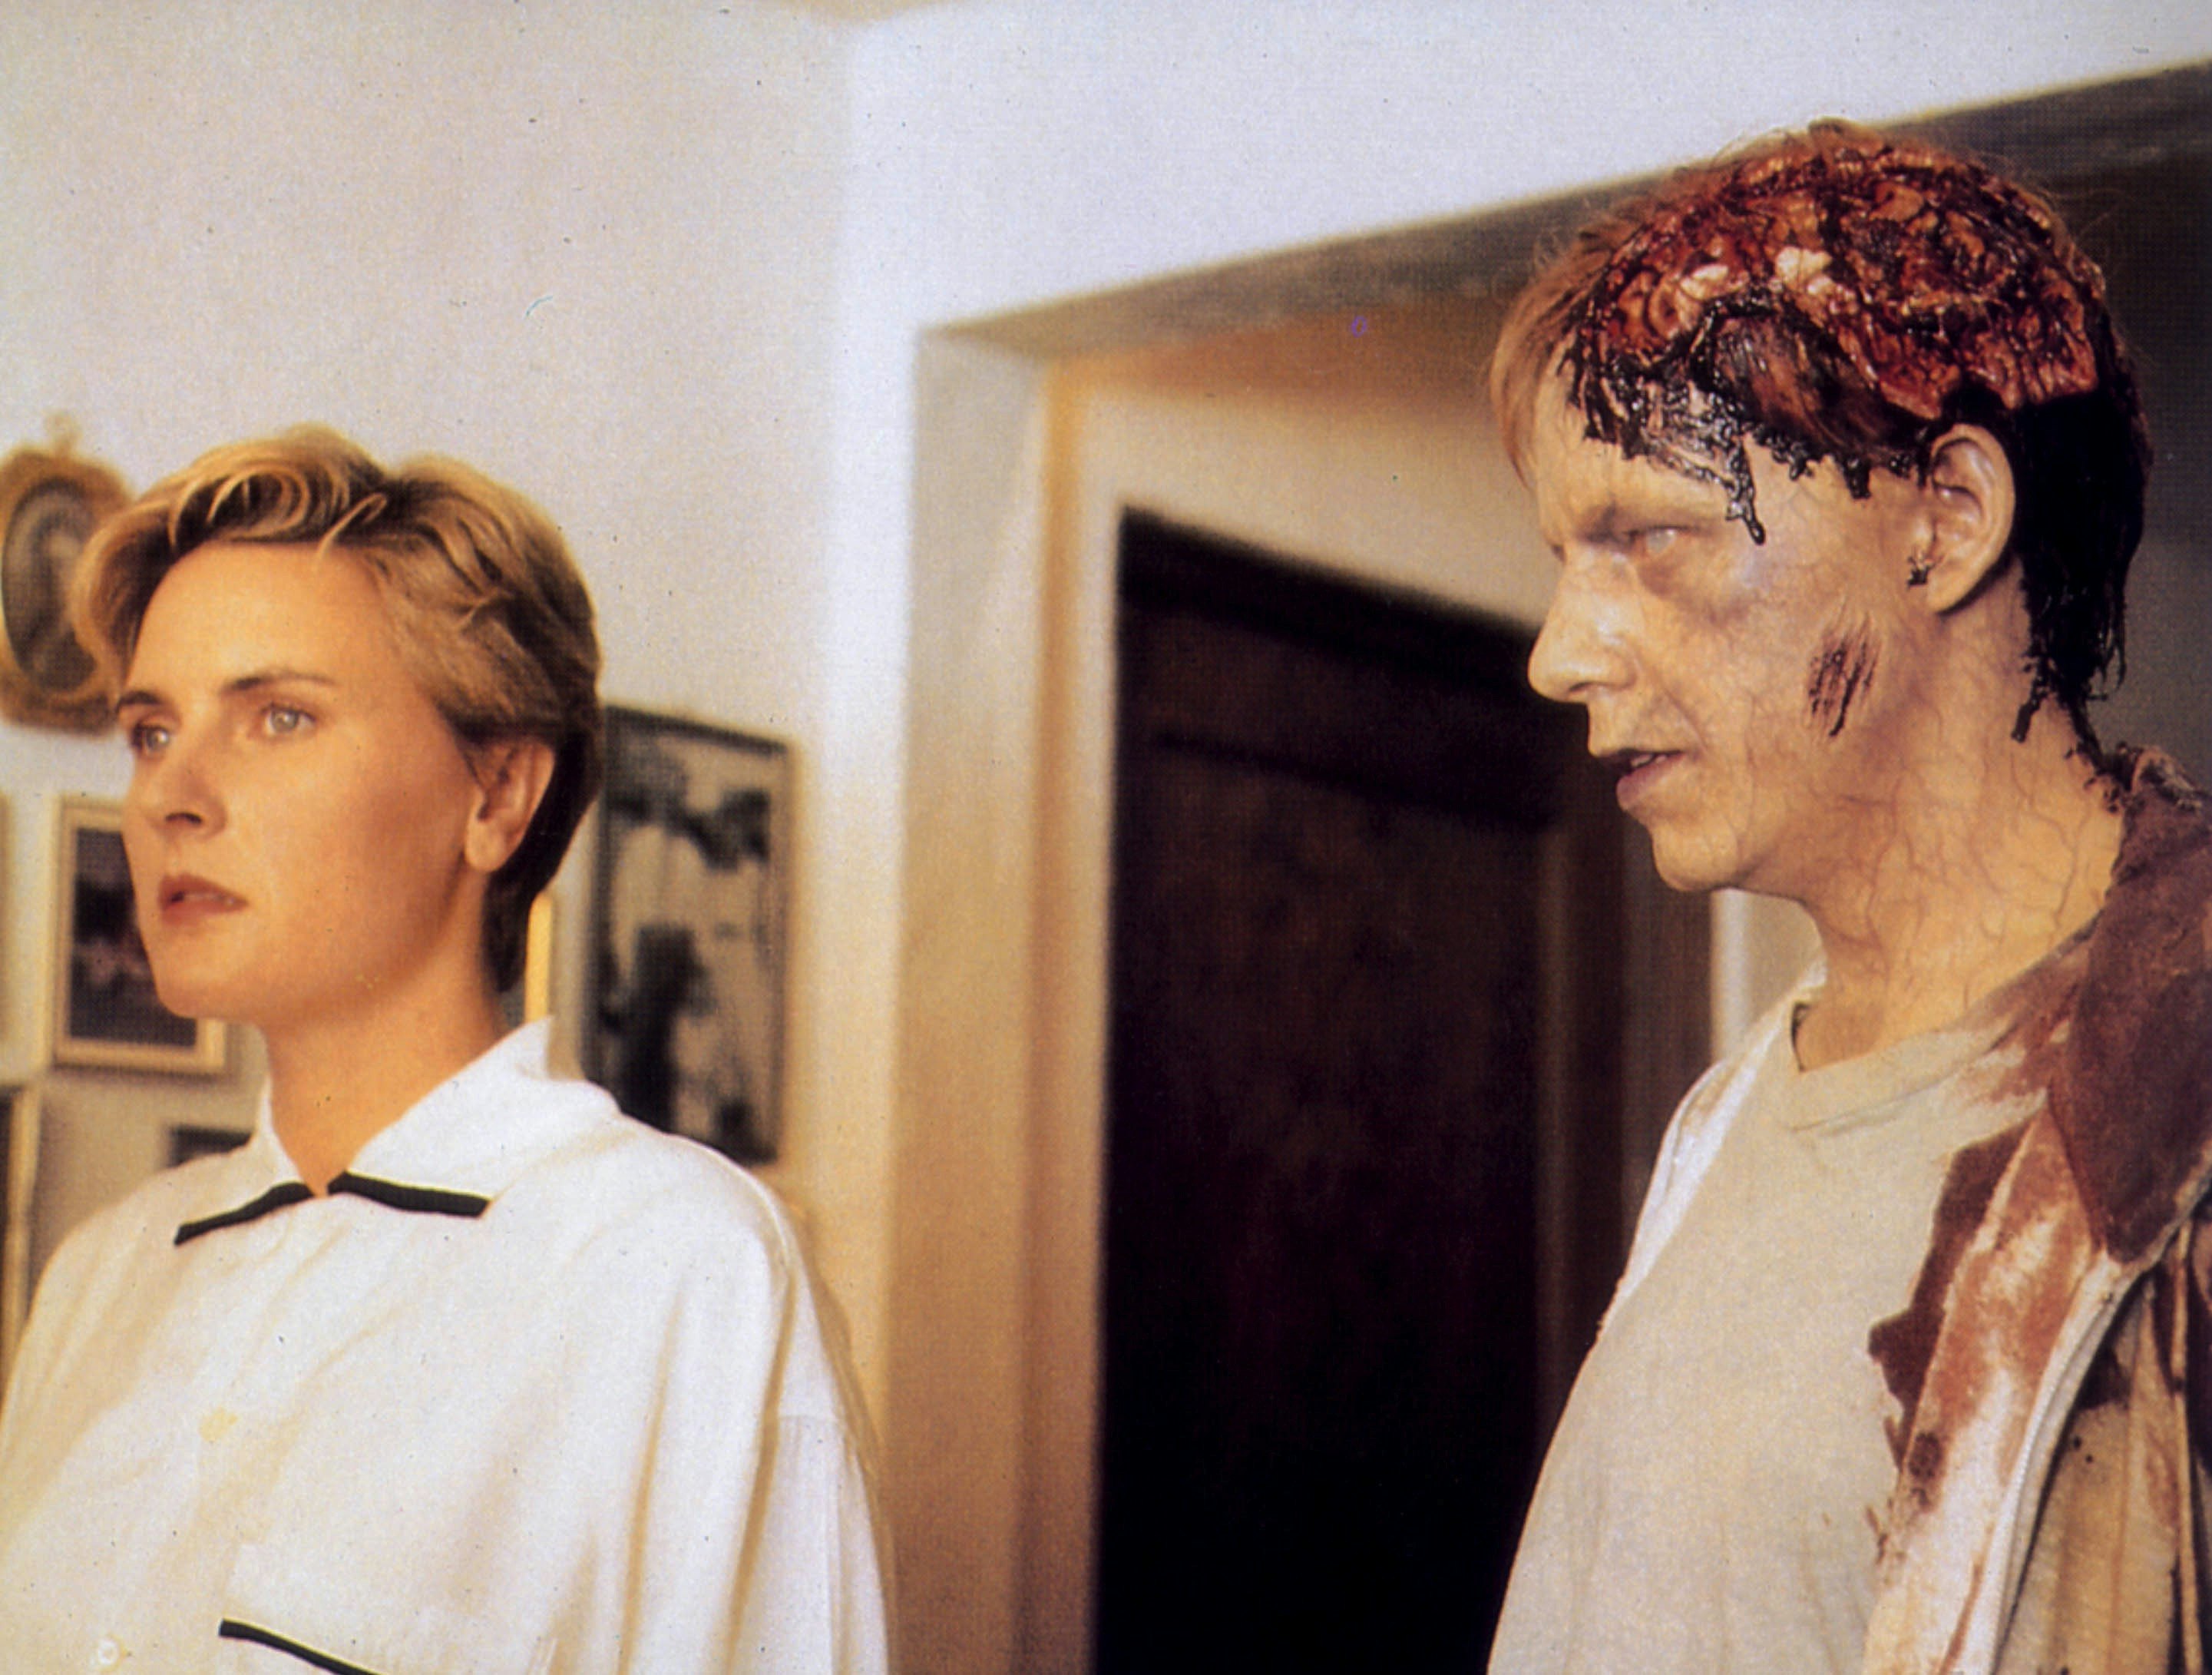 35 лет назад Стивен Кинг снял культовый триллер о зомби с участием двух недооцененных легенд научной фантастики.